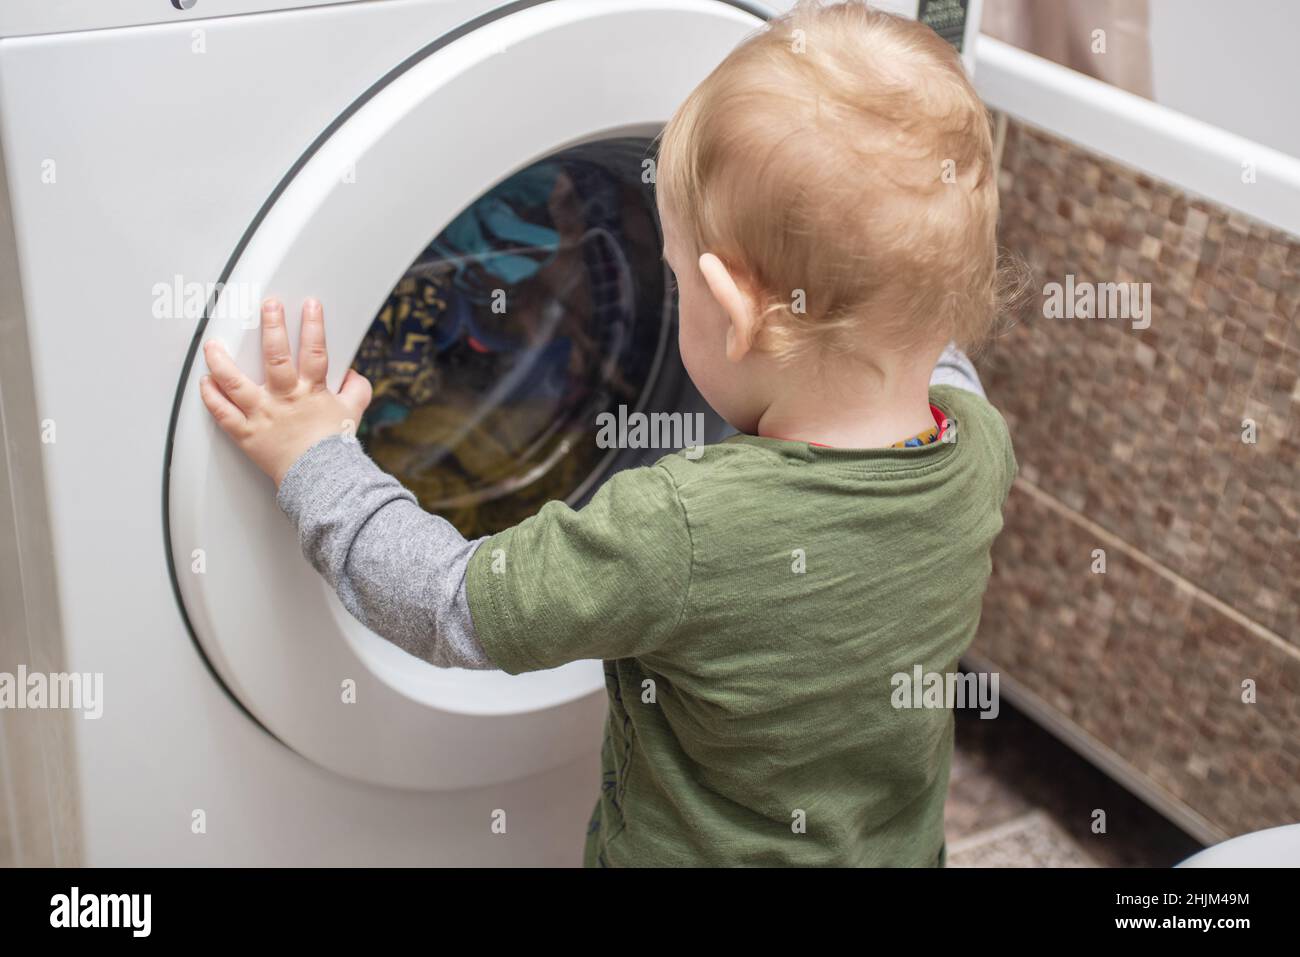 Enfant garçon regarde dans la machine à laver.Bébé garçon